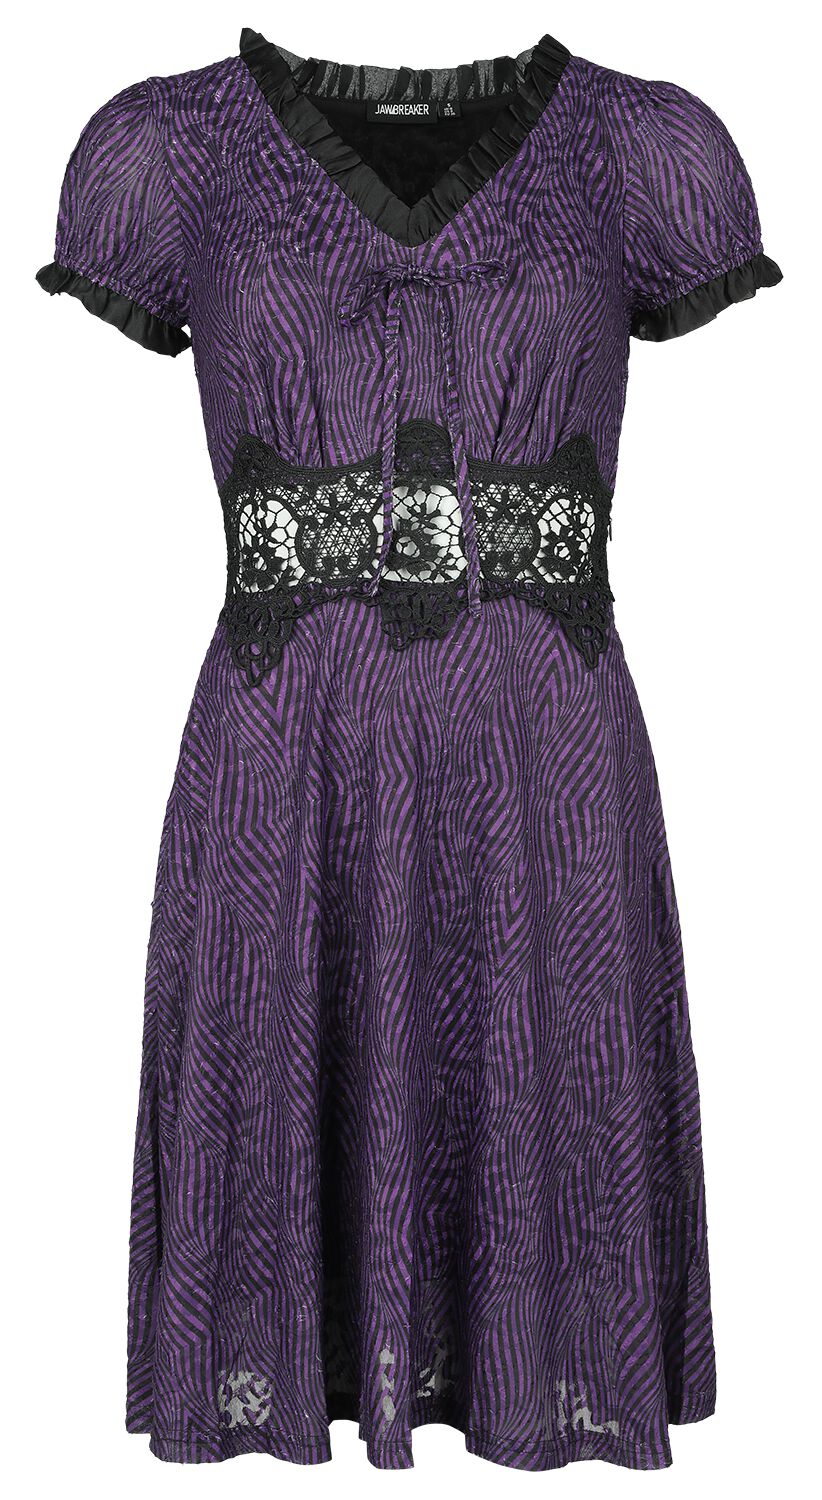 Jawbreaker Purple Zebra Dress Kurzes Kleid lila schwarz in L von Jawbreaker